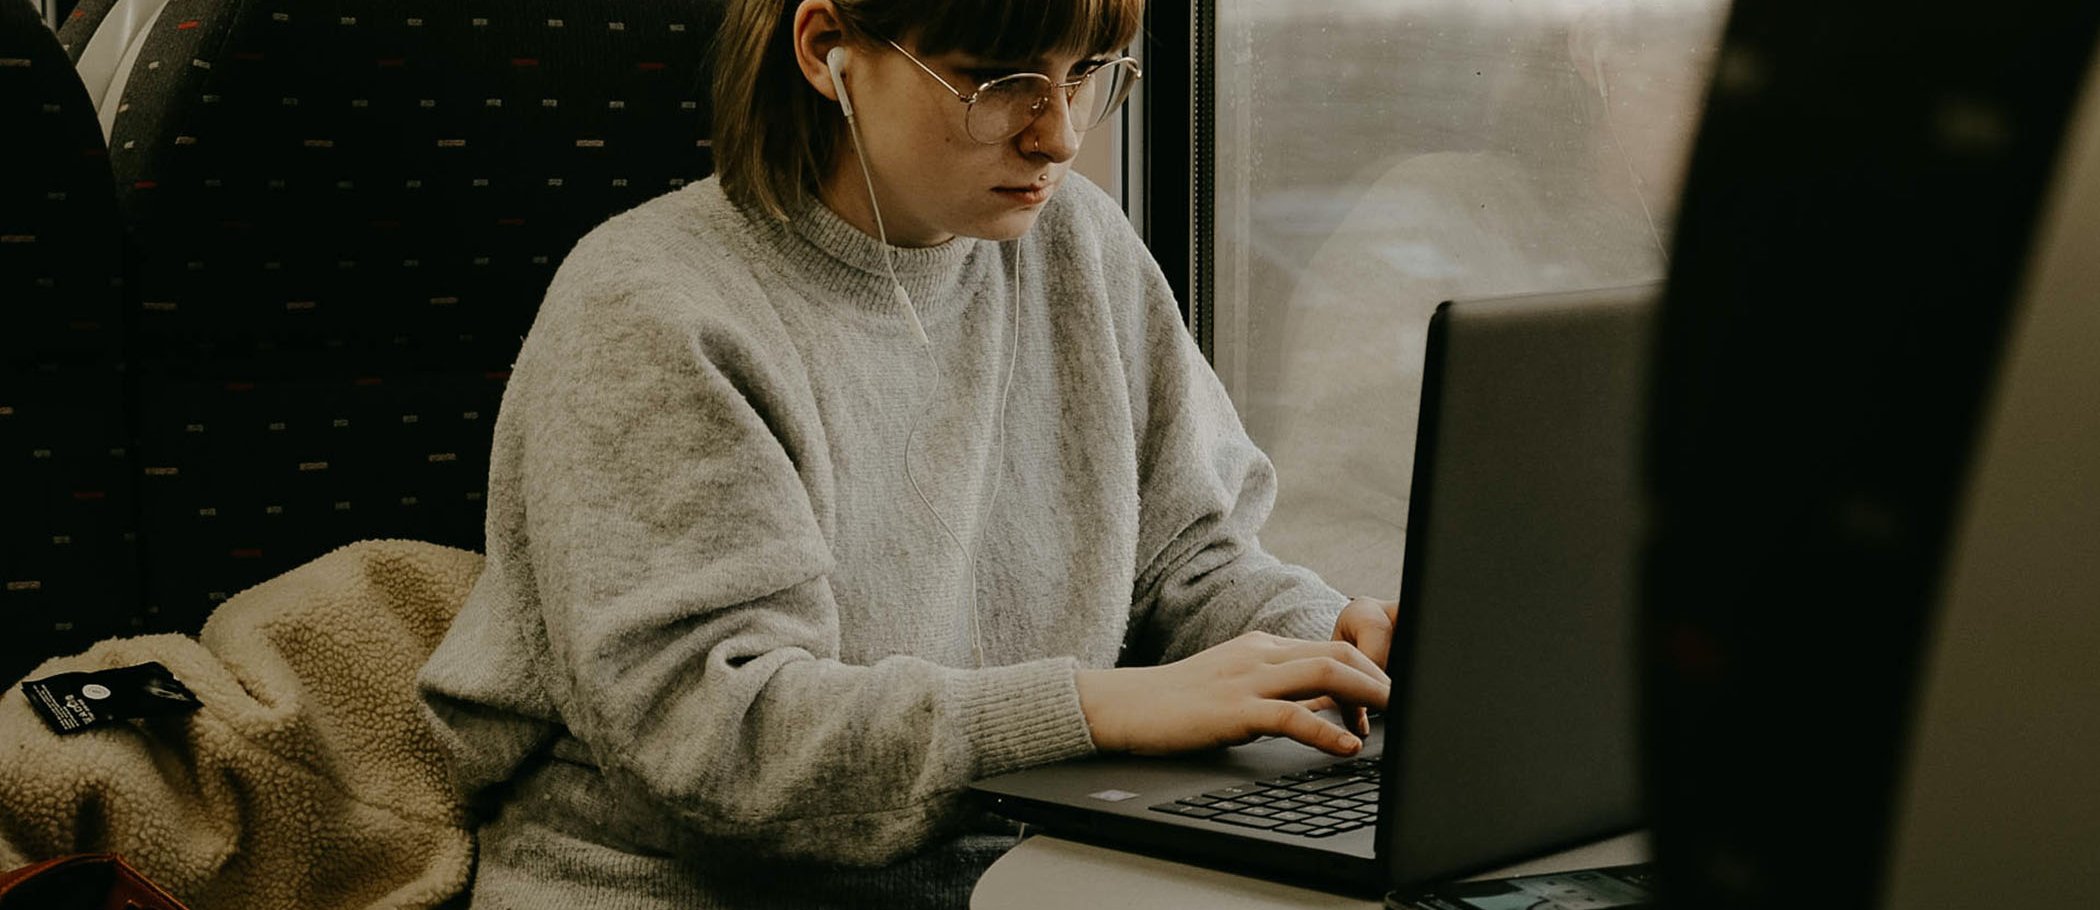 Una noia asseguda en un tren, amb auriculars i escrivint en un portàtil